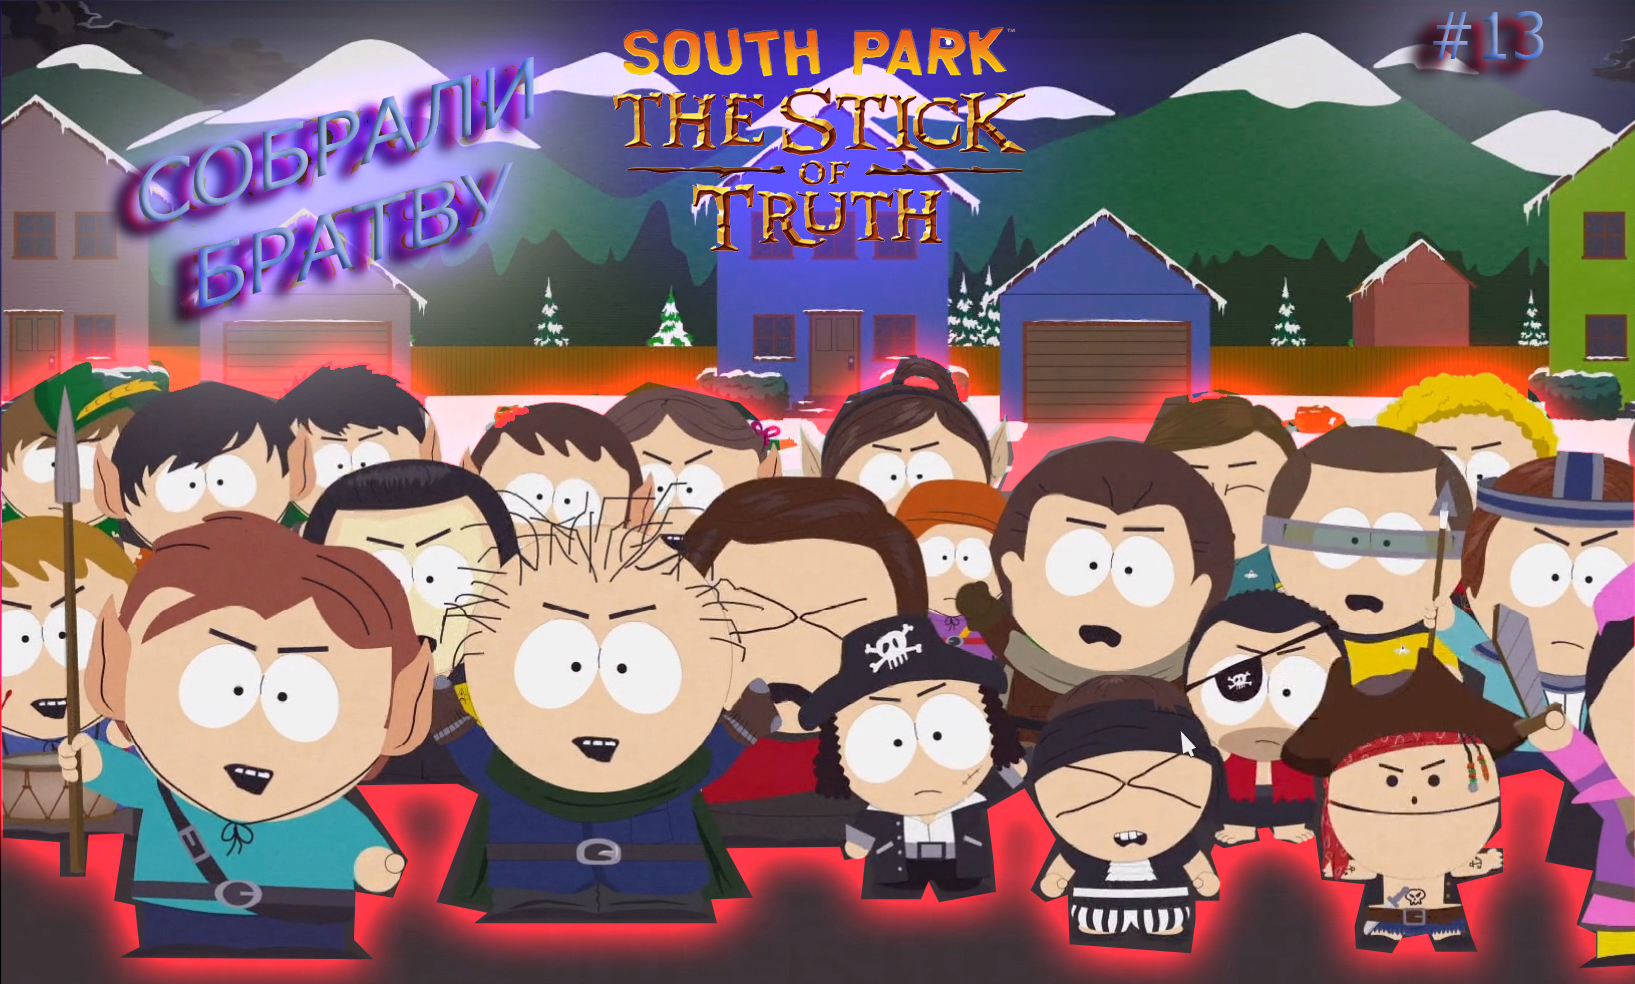 South park the stick of truth скрытые достижения в стим фото 68